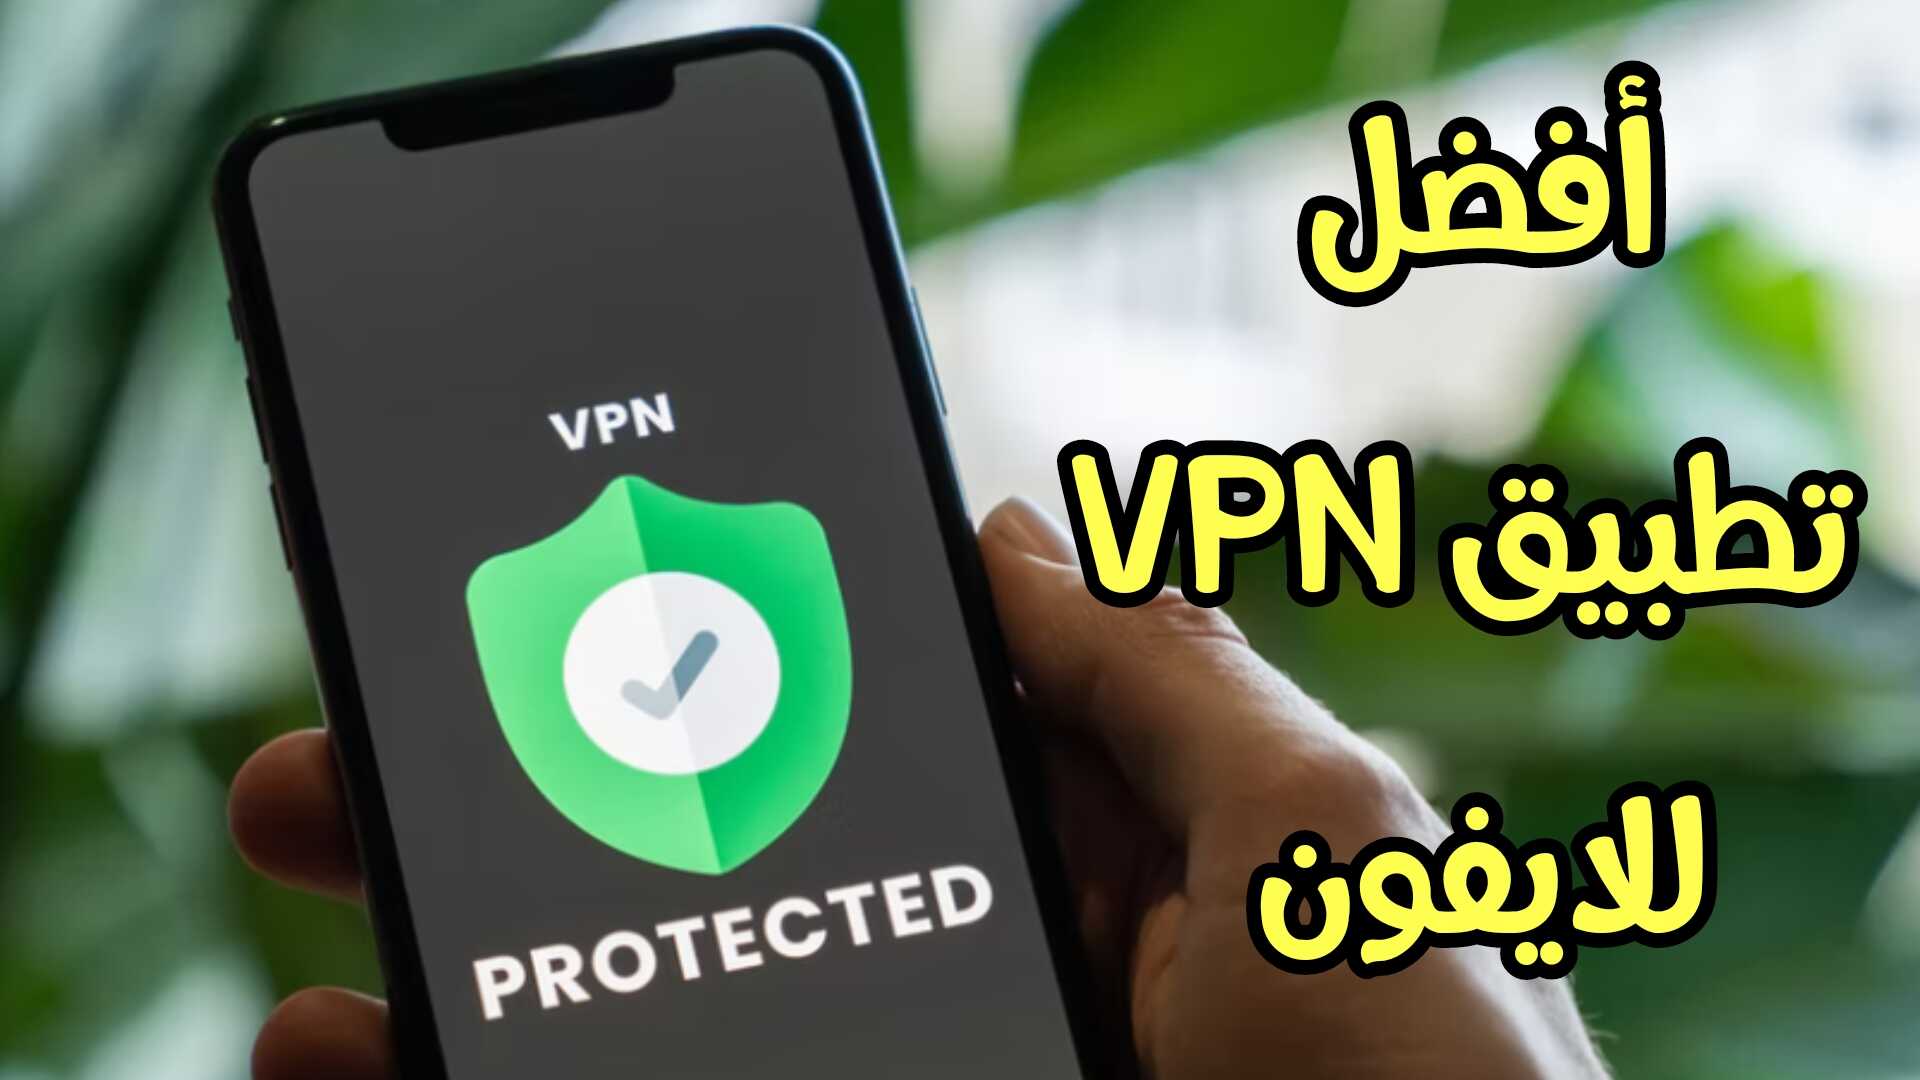 أفضل تطبيق VPN للايفون لتسريع الانترنت ورفع الحظر